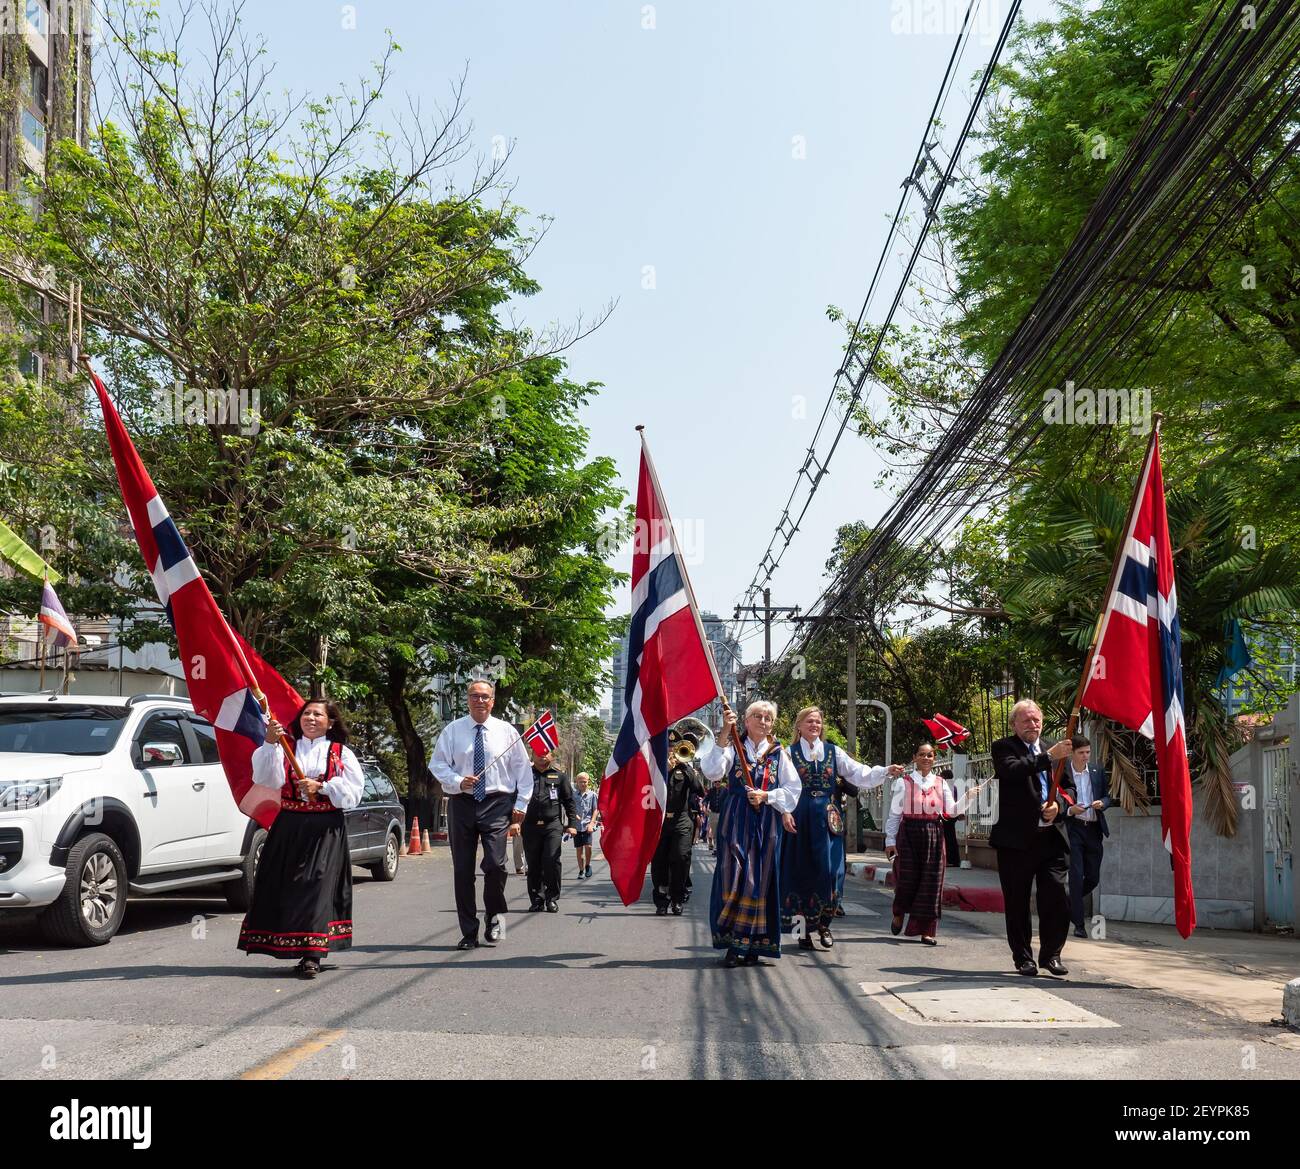 Norvégiens avec des amis, des conjoints et des enfants thaïlandais, célébrant leur journée nationale, le jour de la constitution, le 17 mai 2019 dans la rue à l'extérieur du N Banque D'Images